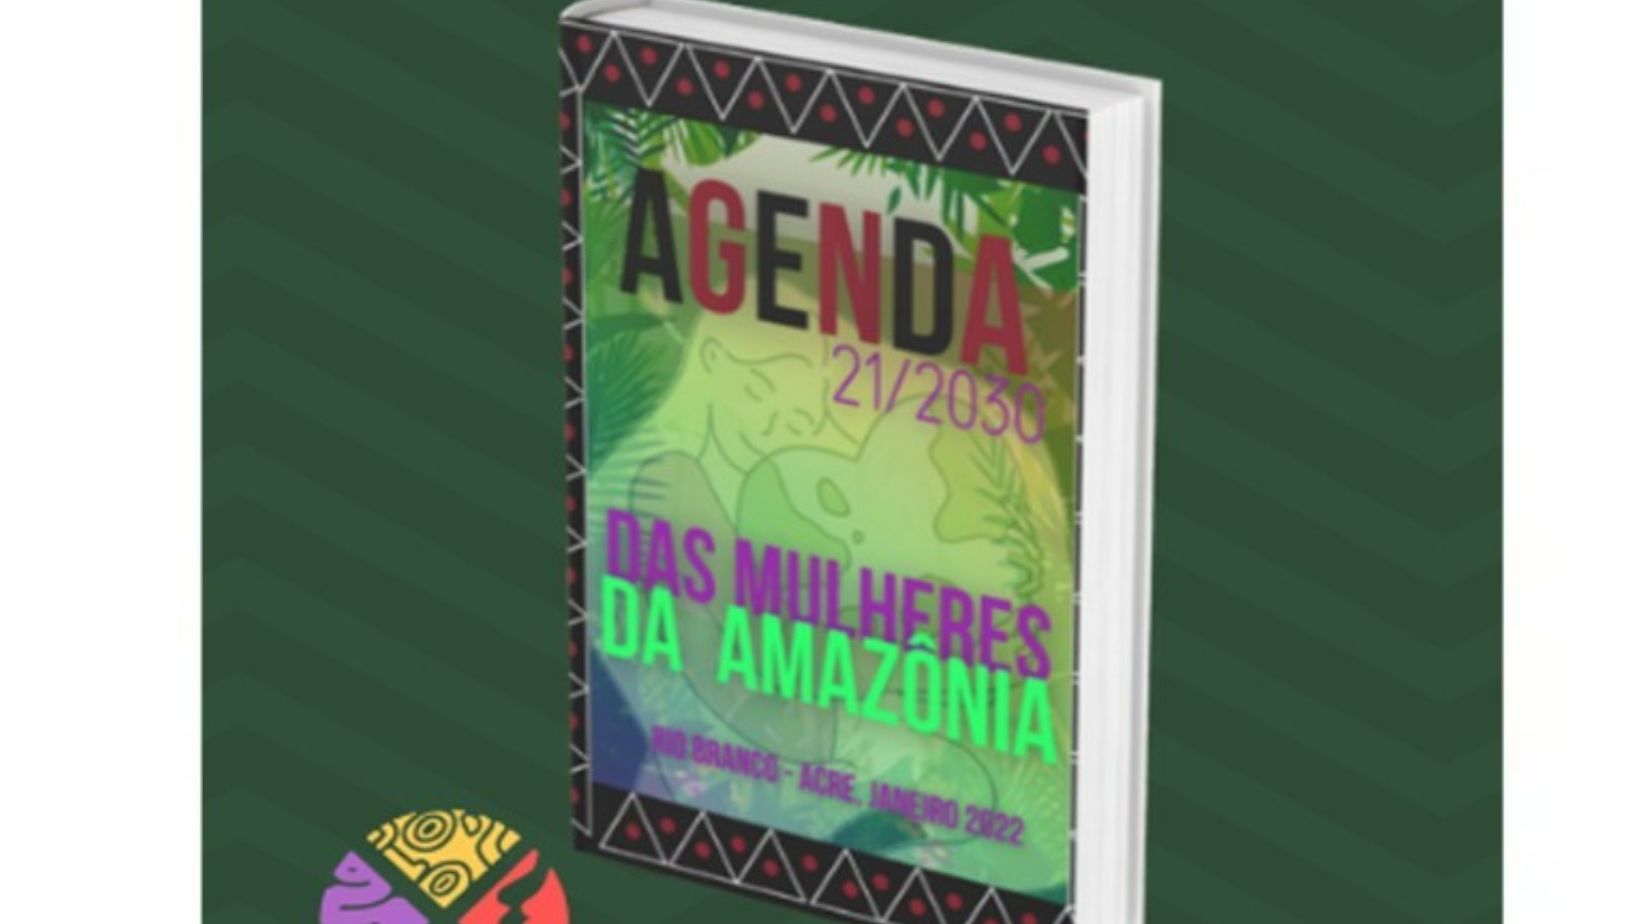 X FOSPA: Movimento Articulado de Mulheres da Amazônia lança a Agenda 21/2030